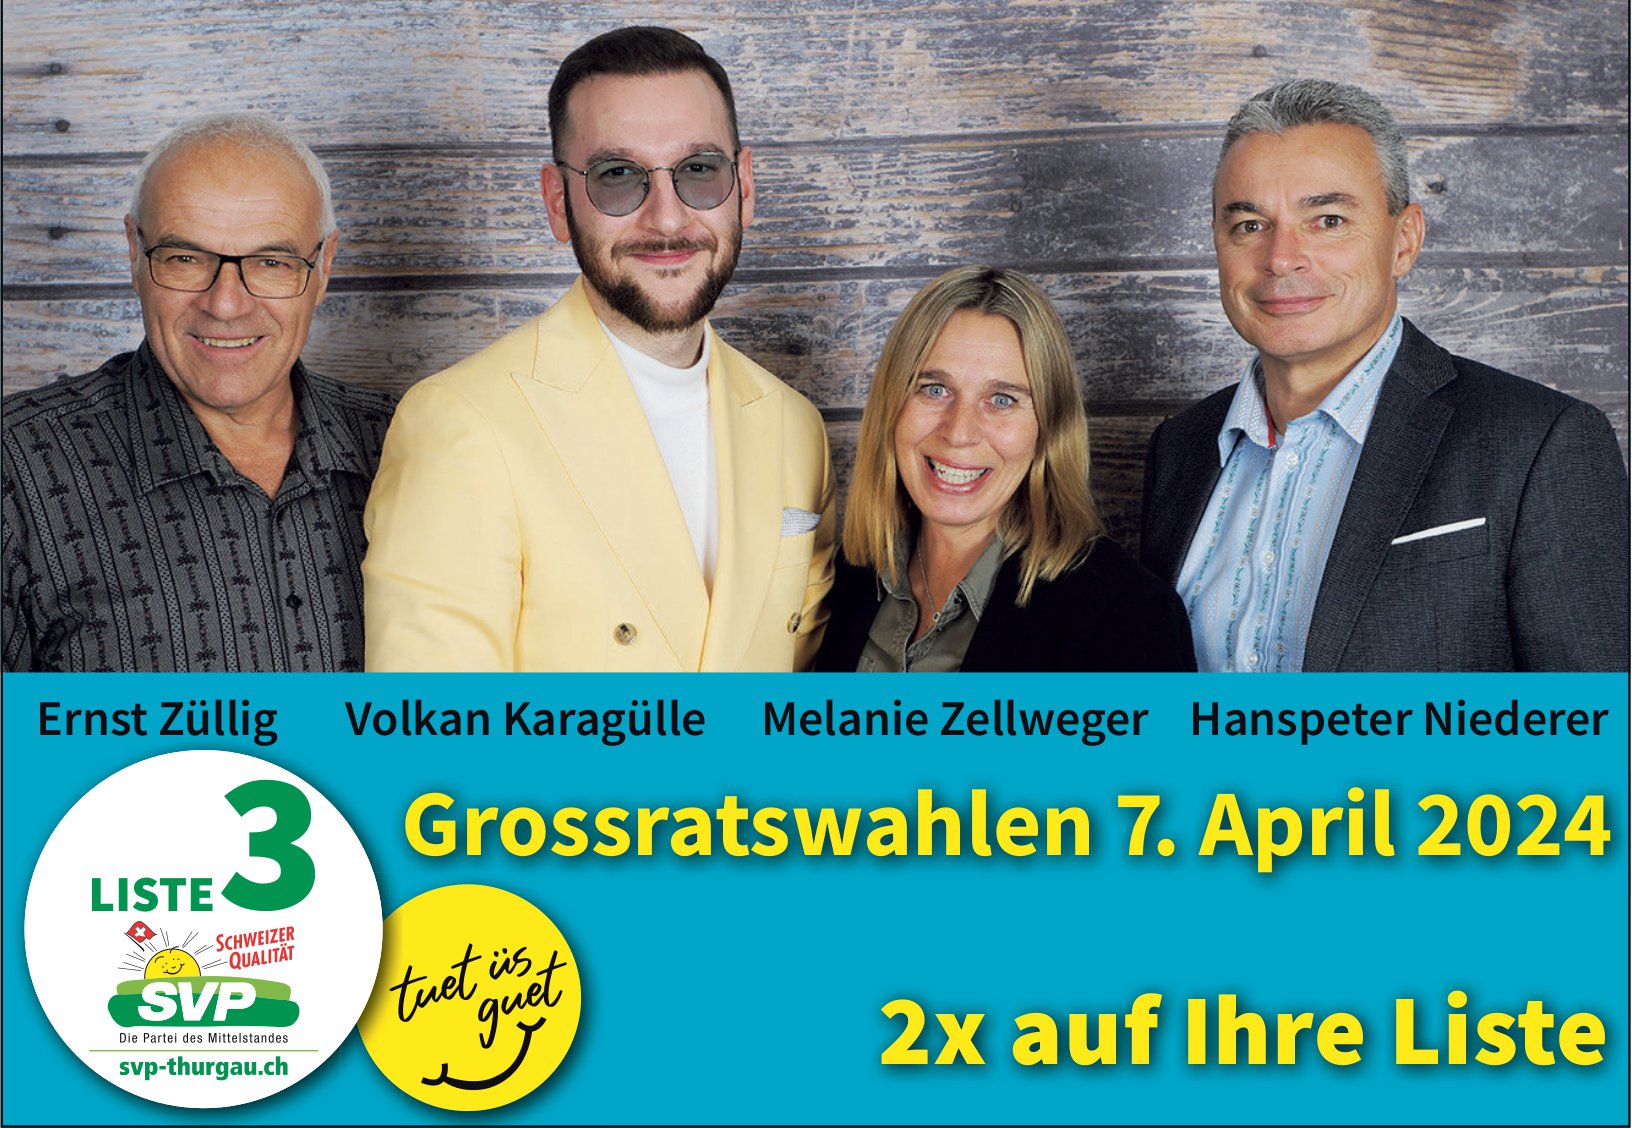 SVP Thurgau, Grossratswahlen